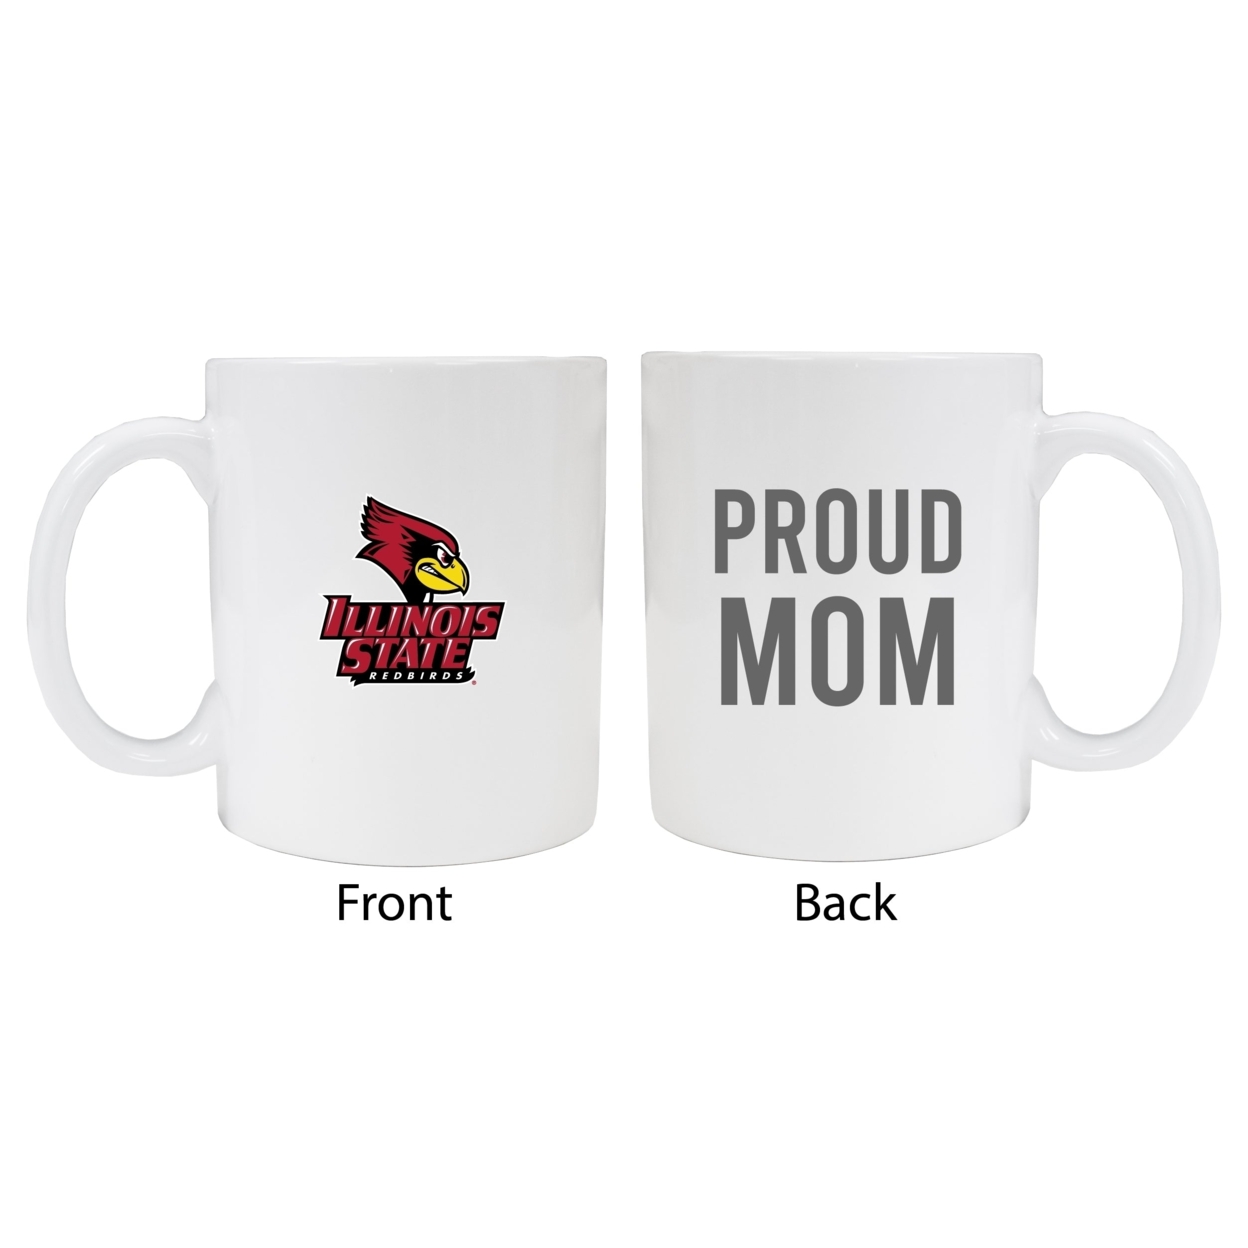 Illinois State Redbirds Proud Mom Ceramic Coffee Mug - White